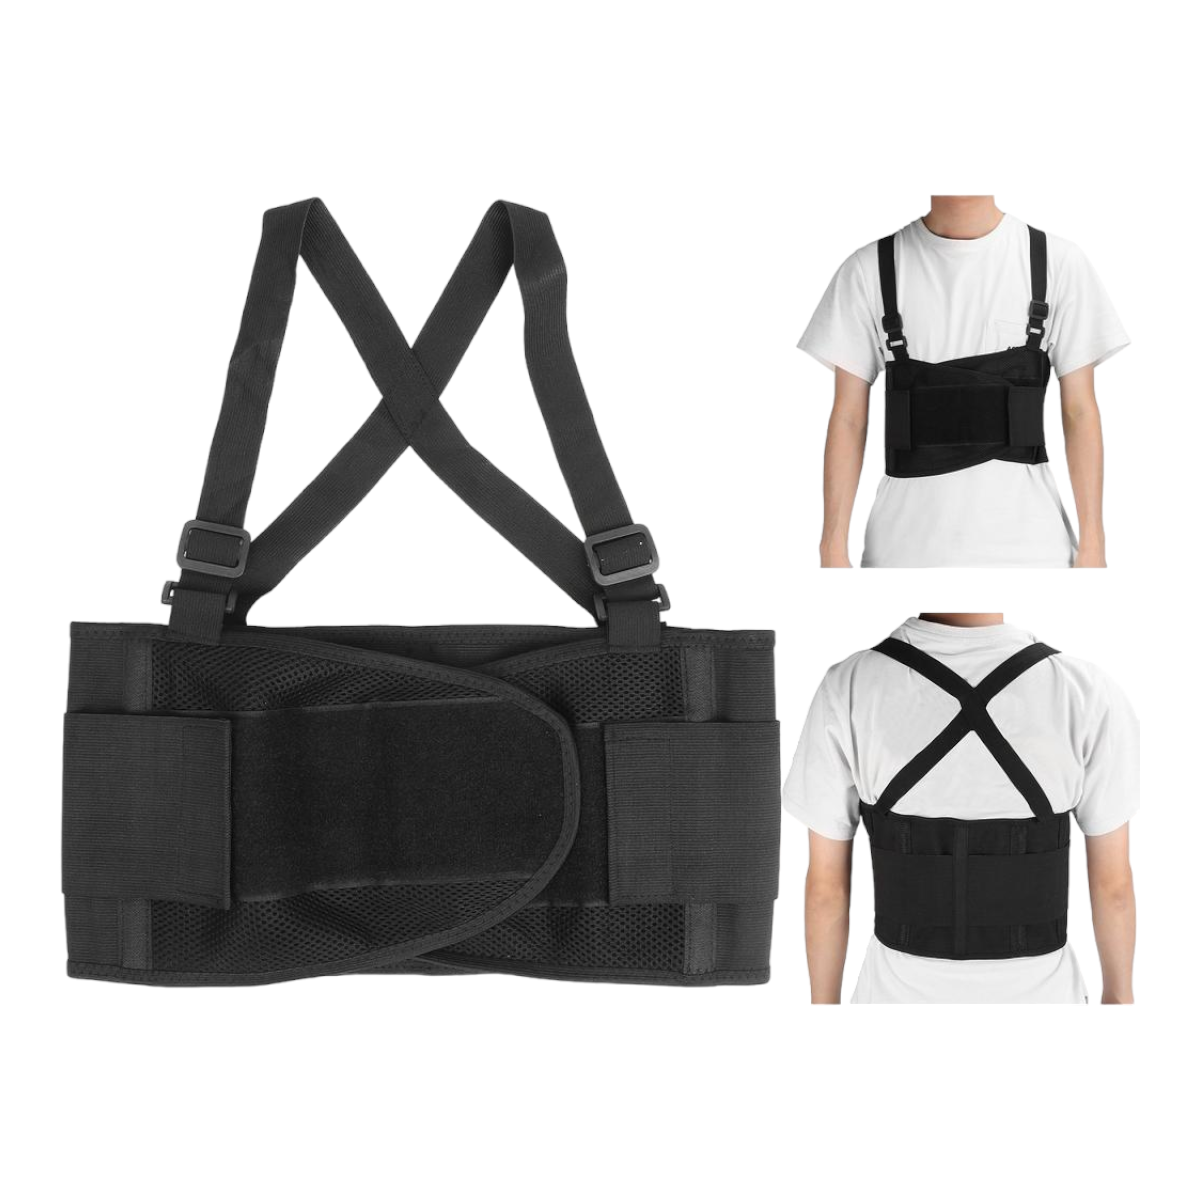 Cinturón soporte cintura ajustable